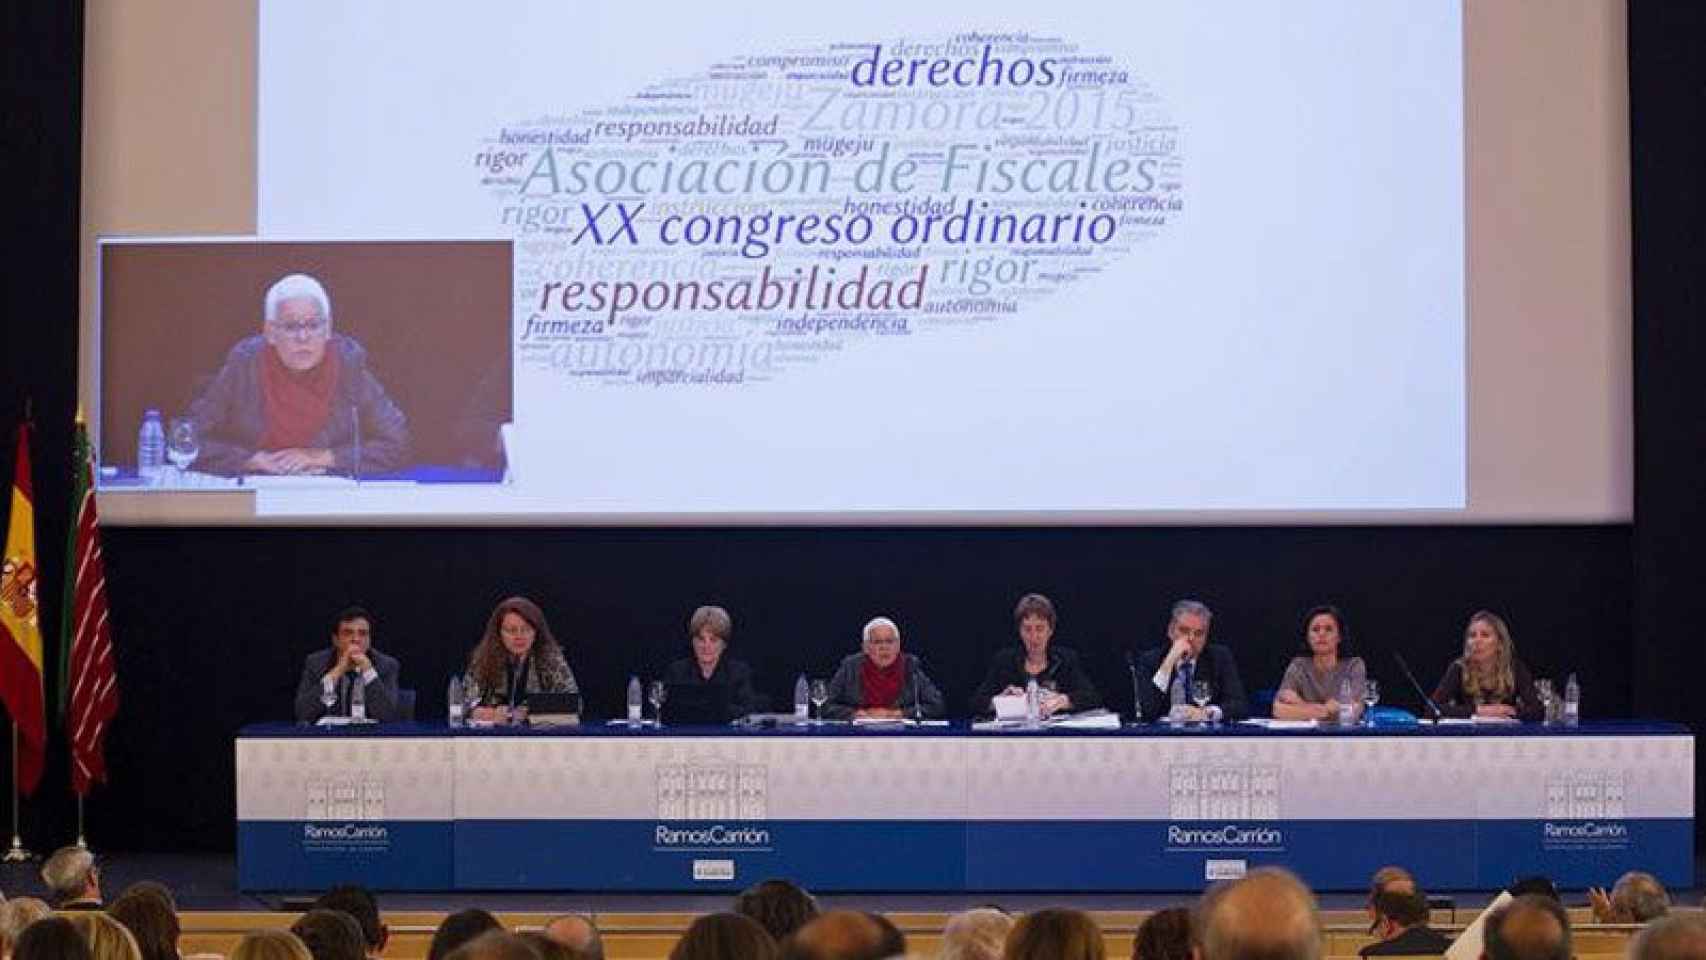 Encuentro de la Asociación de Fiscales, con casi 300 representantes del Ministerio Público, en Zamora